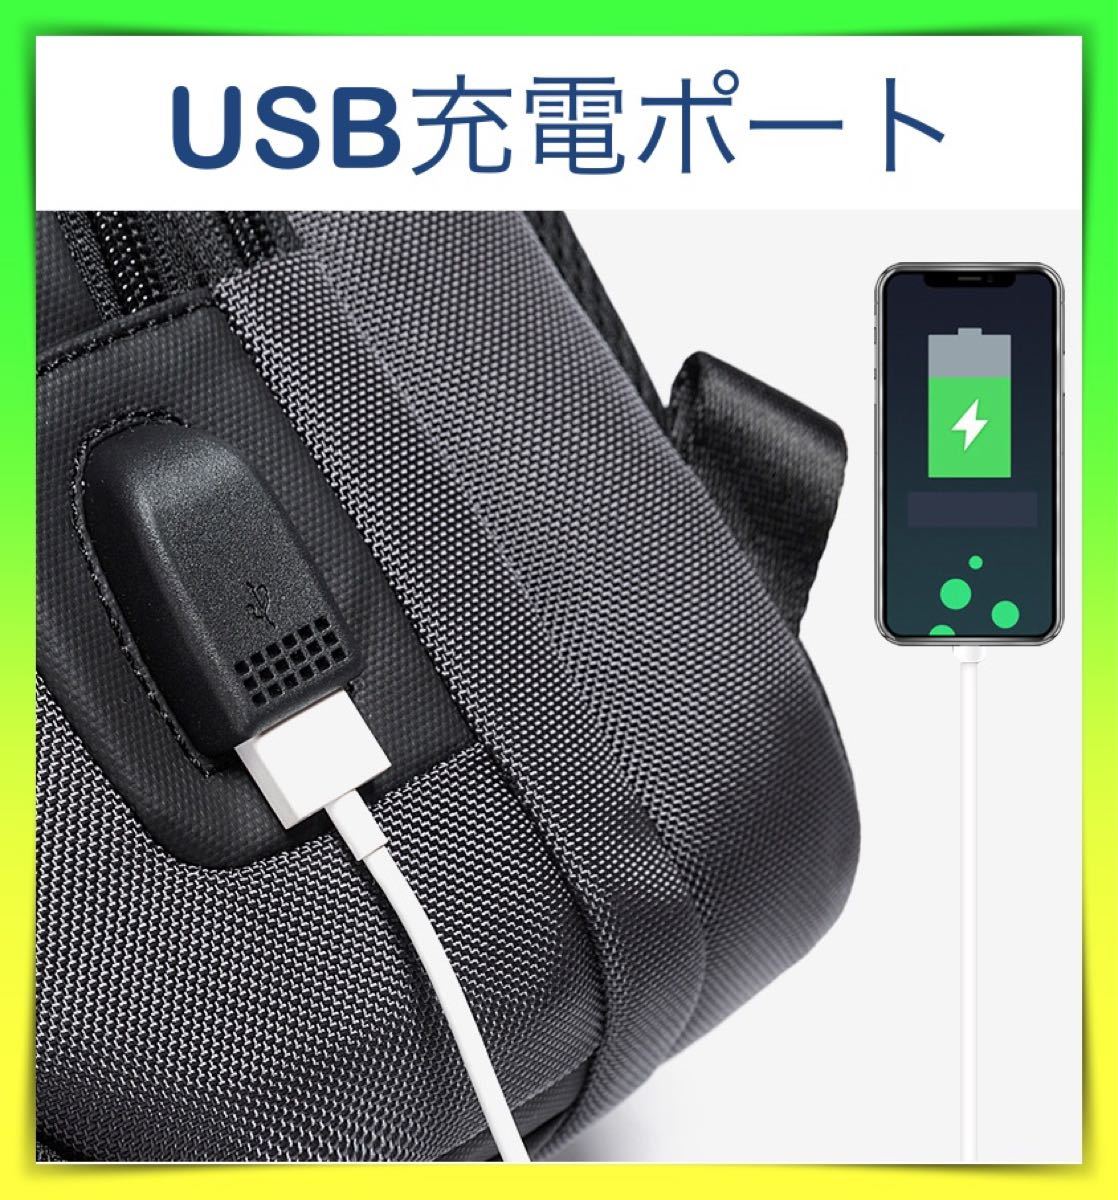 新品 ボディバッグ 黒 大容量 ワンショルダー USBポート iPad収納 防水